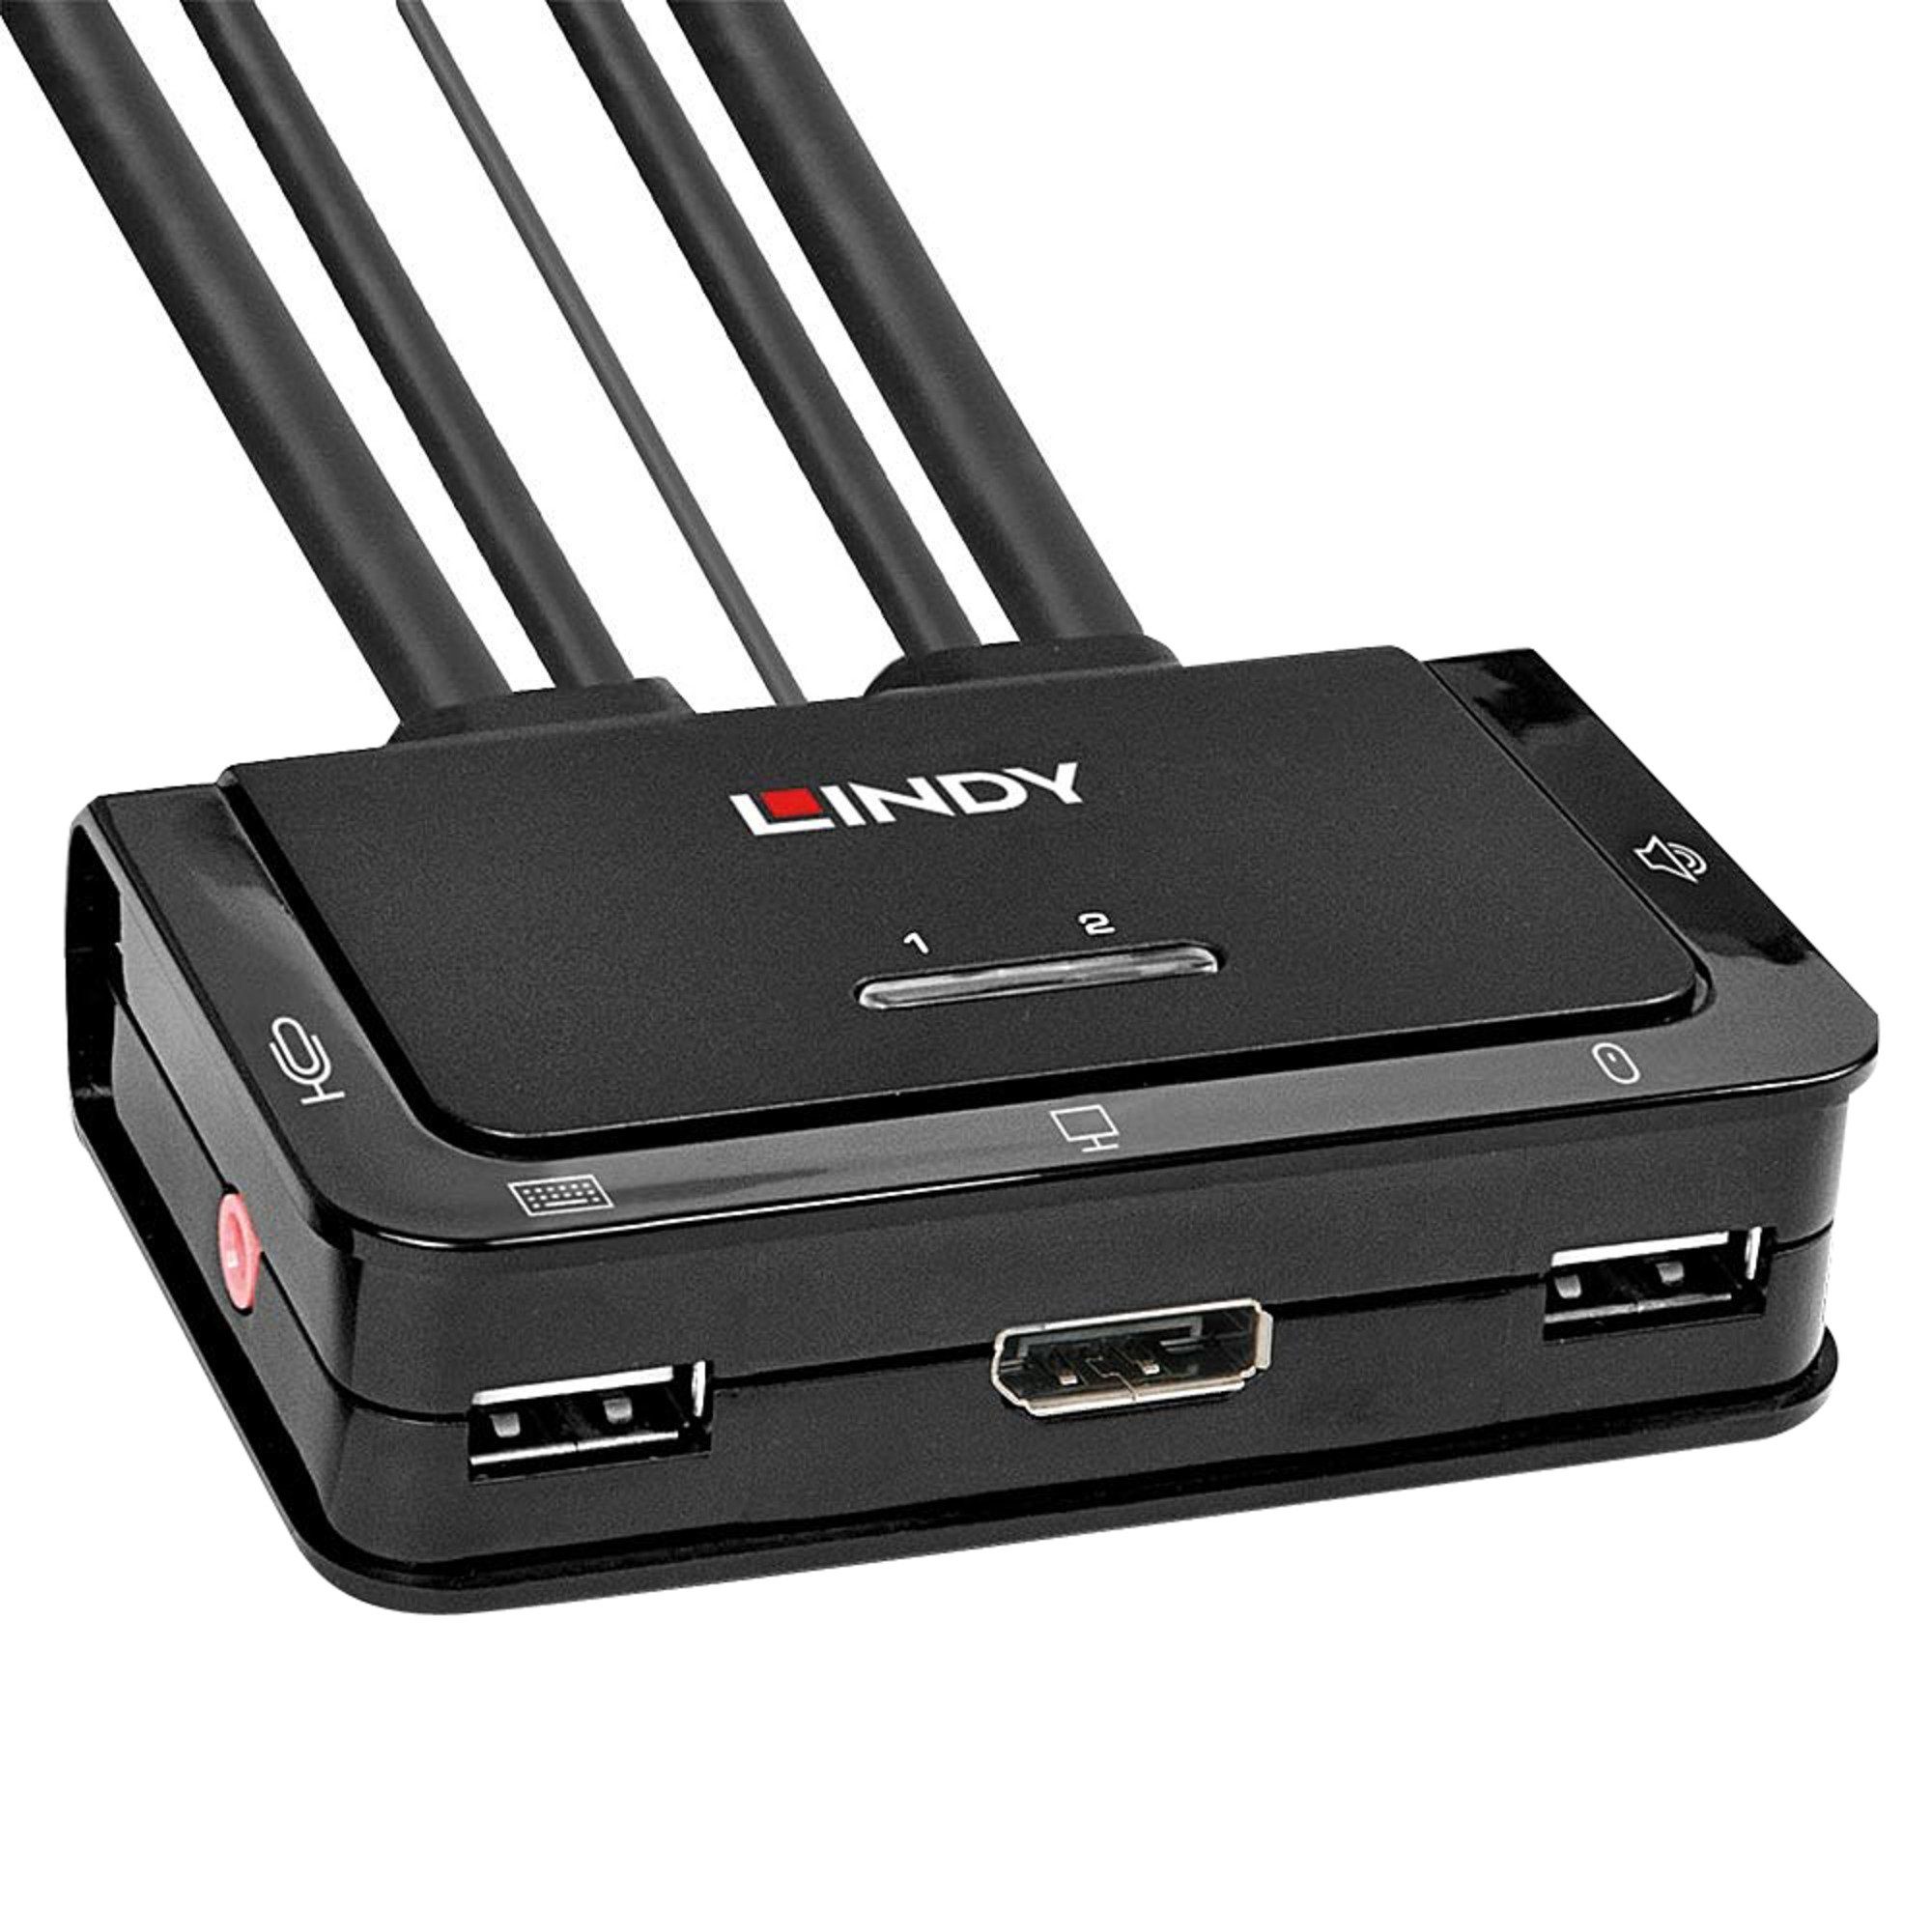 Lindy Lindy 2 & Netzwerk-Switch DisplayPort 1.2, USB 2.0 Port Audio